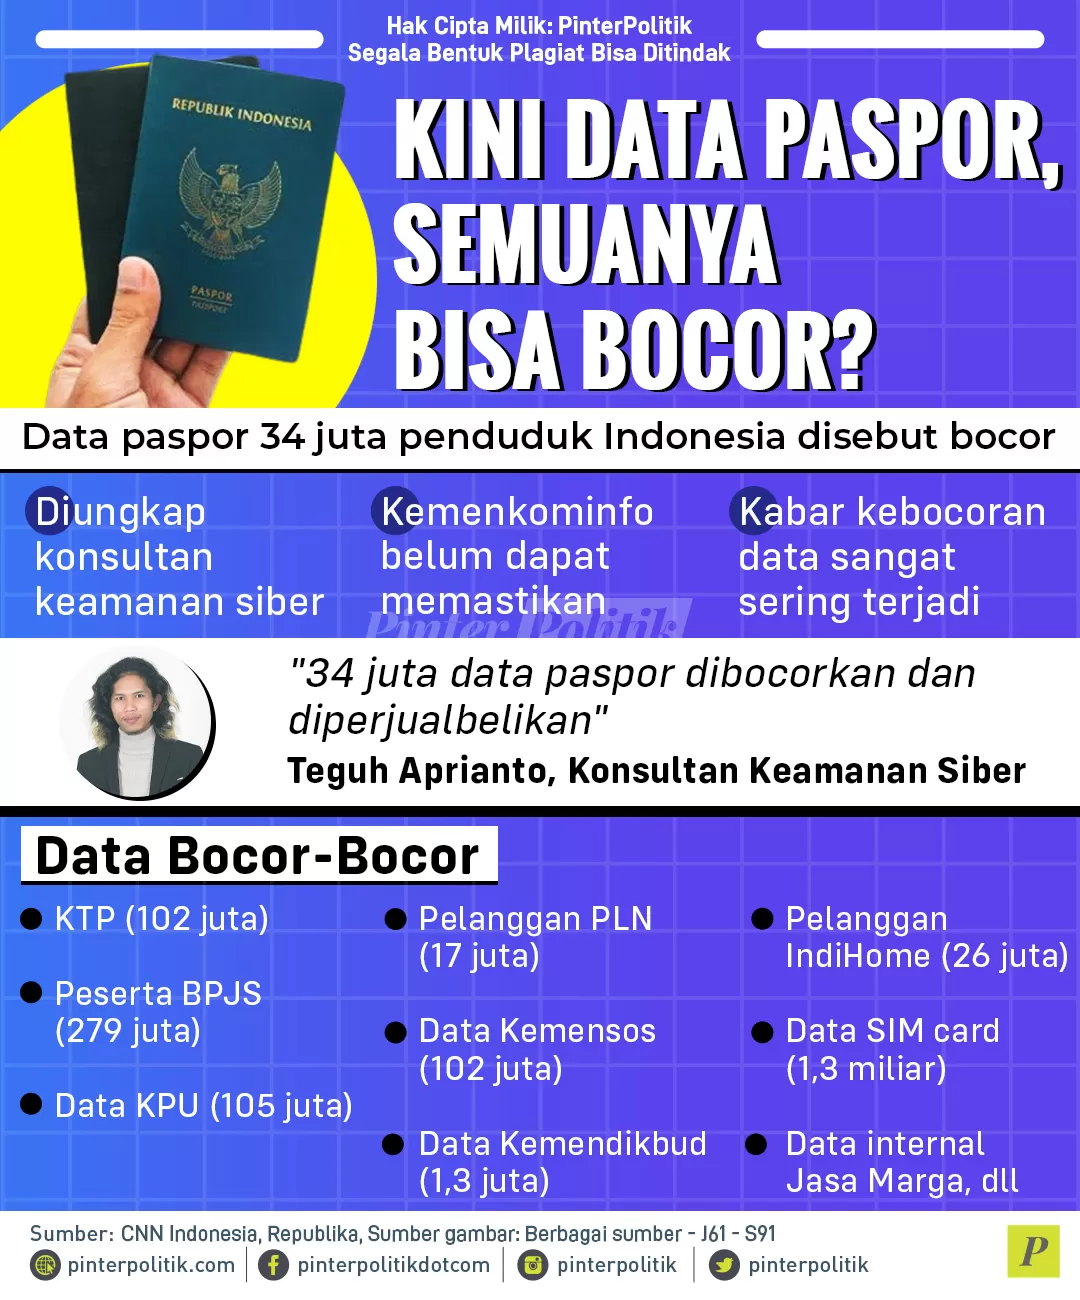 kini data paspor semuanya bisa bocor